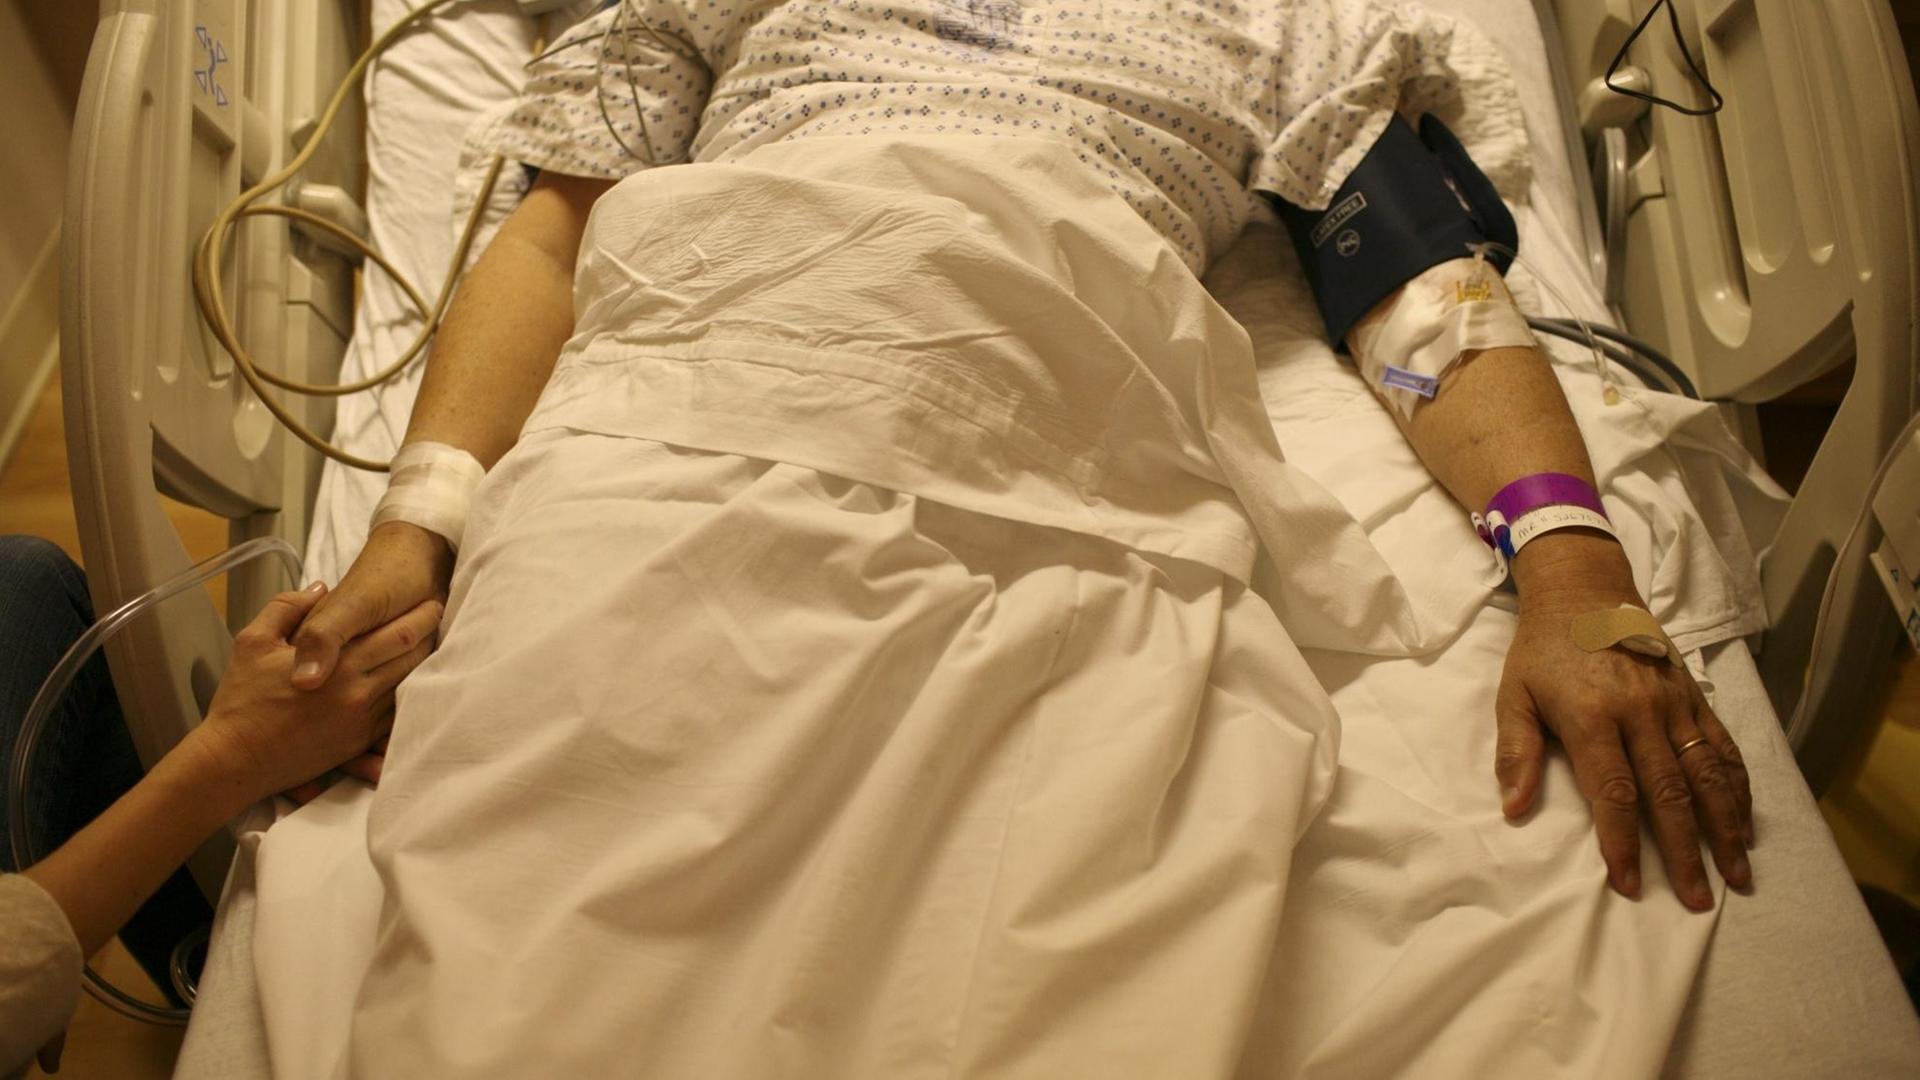 Patient in einem Krankenbett, jemand hält seine Hand